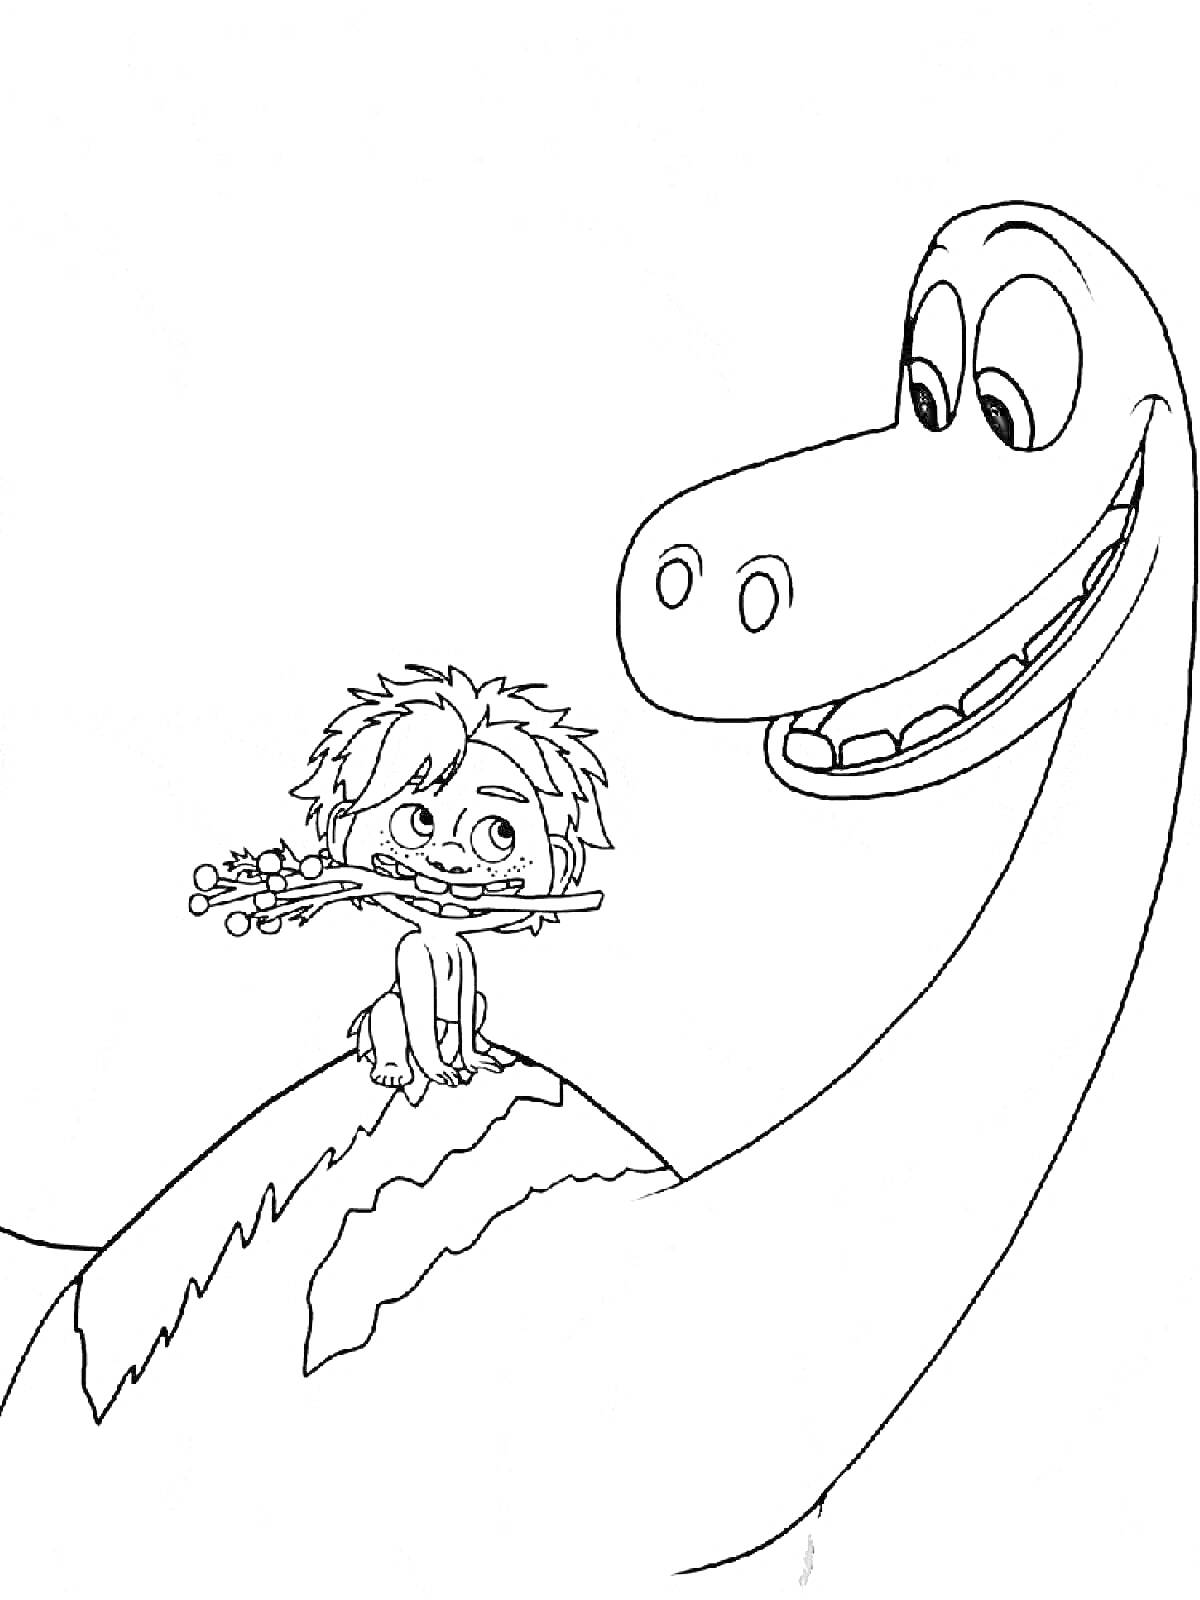 Раскраска Человек с прутиком во рту верхом на динозавре